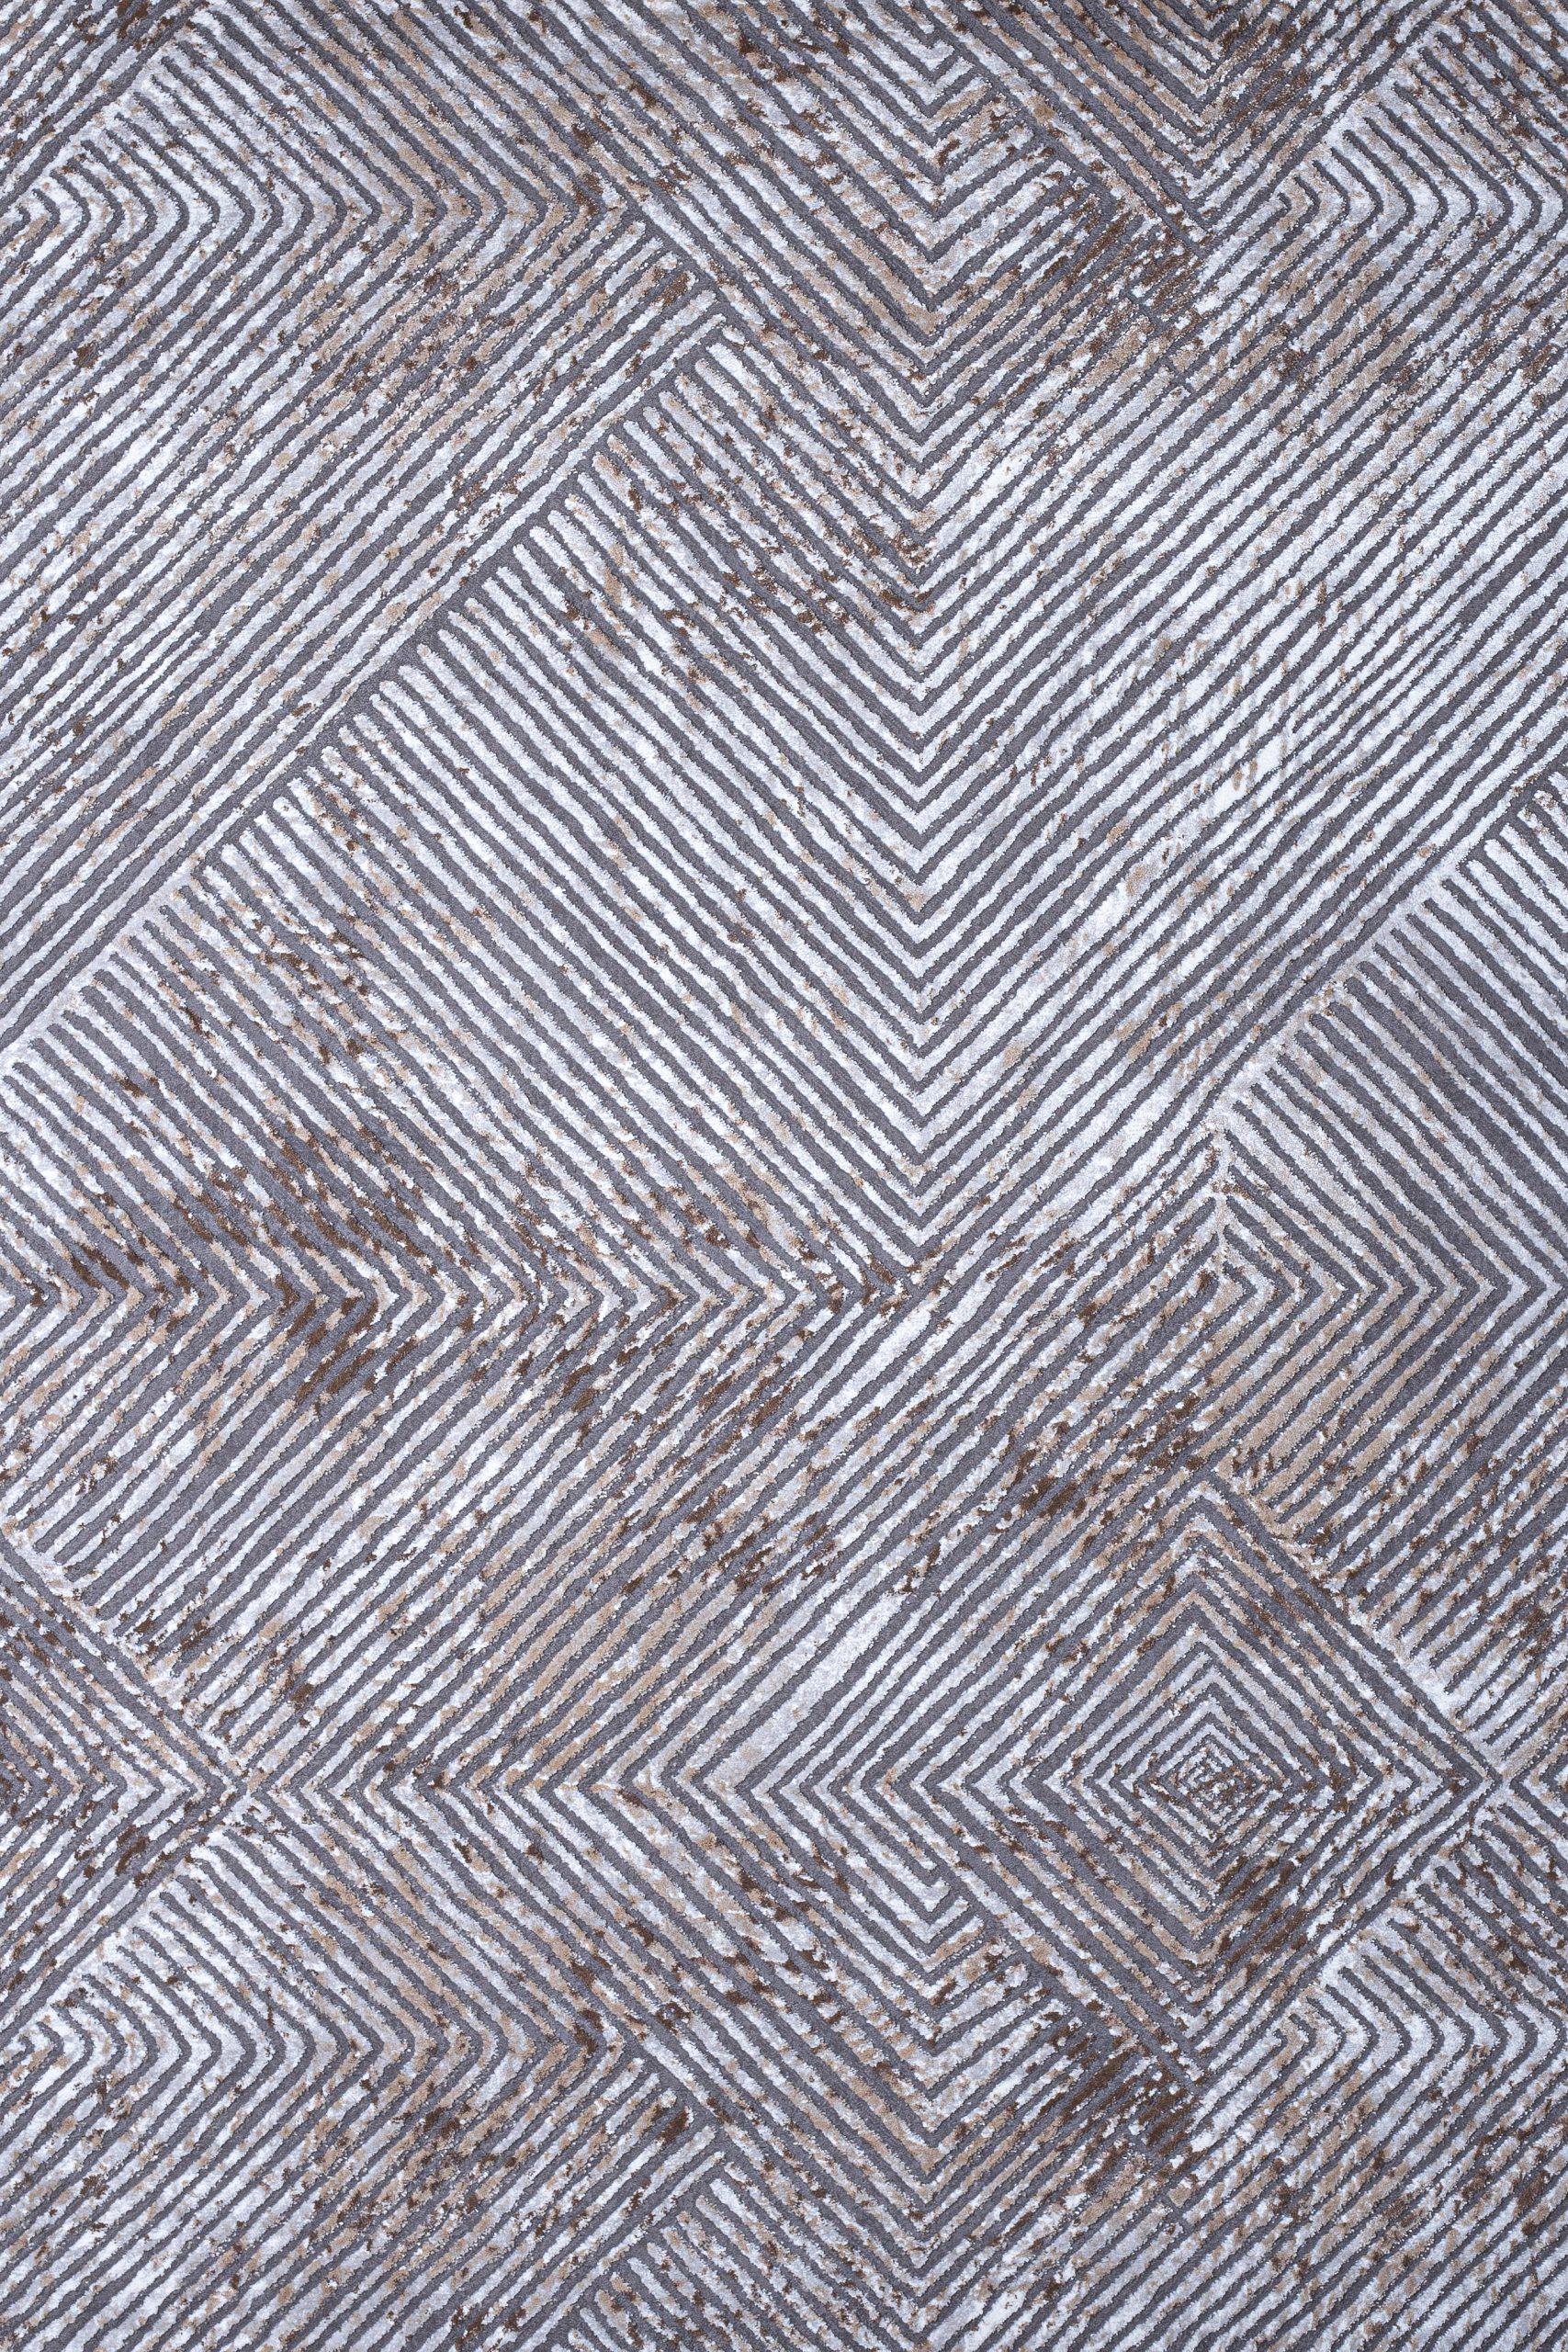 Γραμμικό χαλί γκρι μπεζ Ostia 7100/976 - 1,30x1,90 Colore Colori